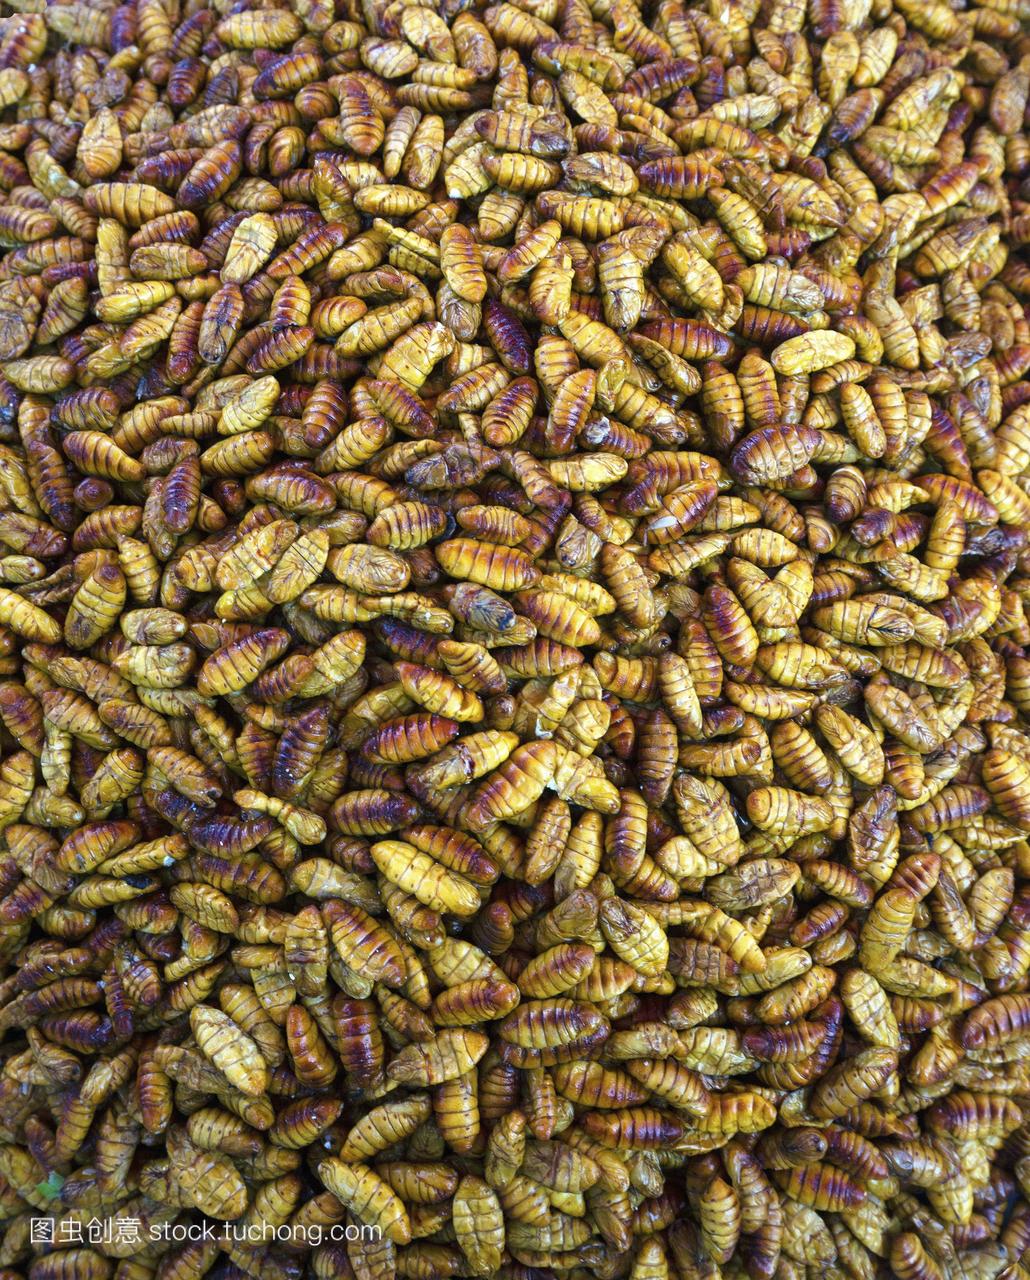 油炸蚕在市场,食用昆虫泰国美食,特产泰国